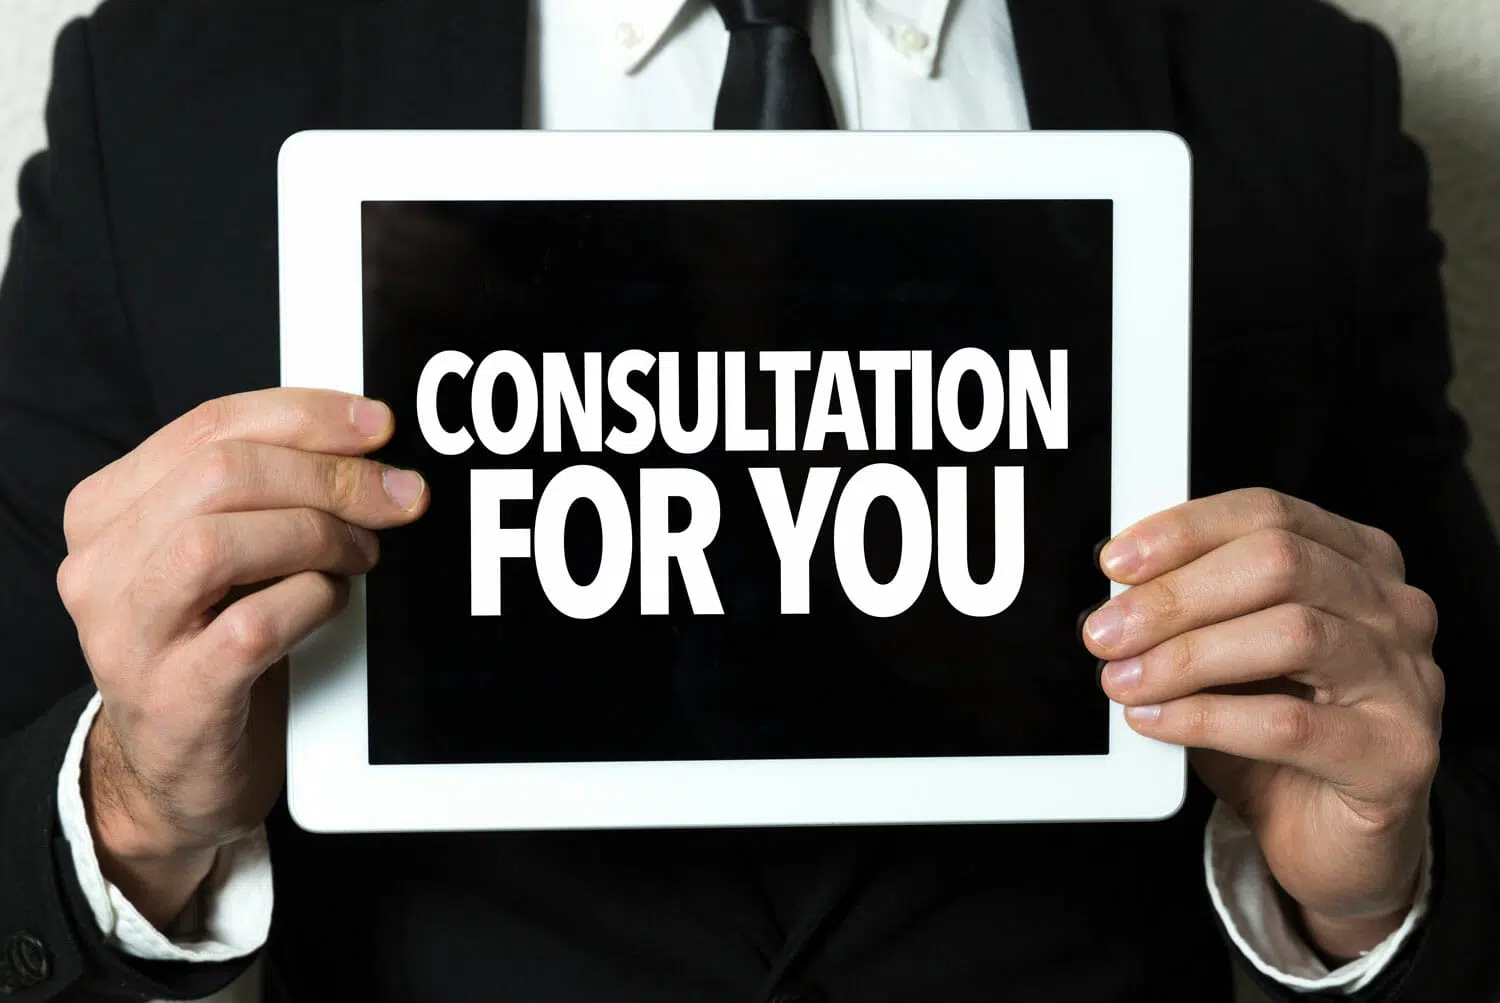 do you offer free consultations?